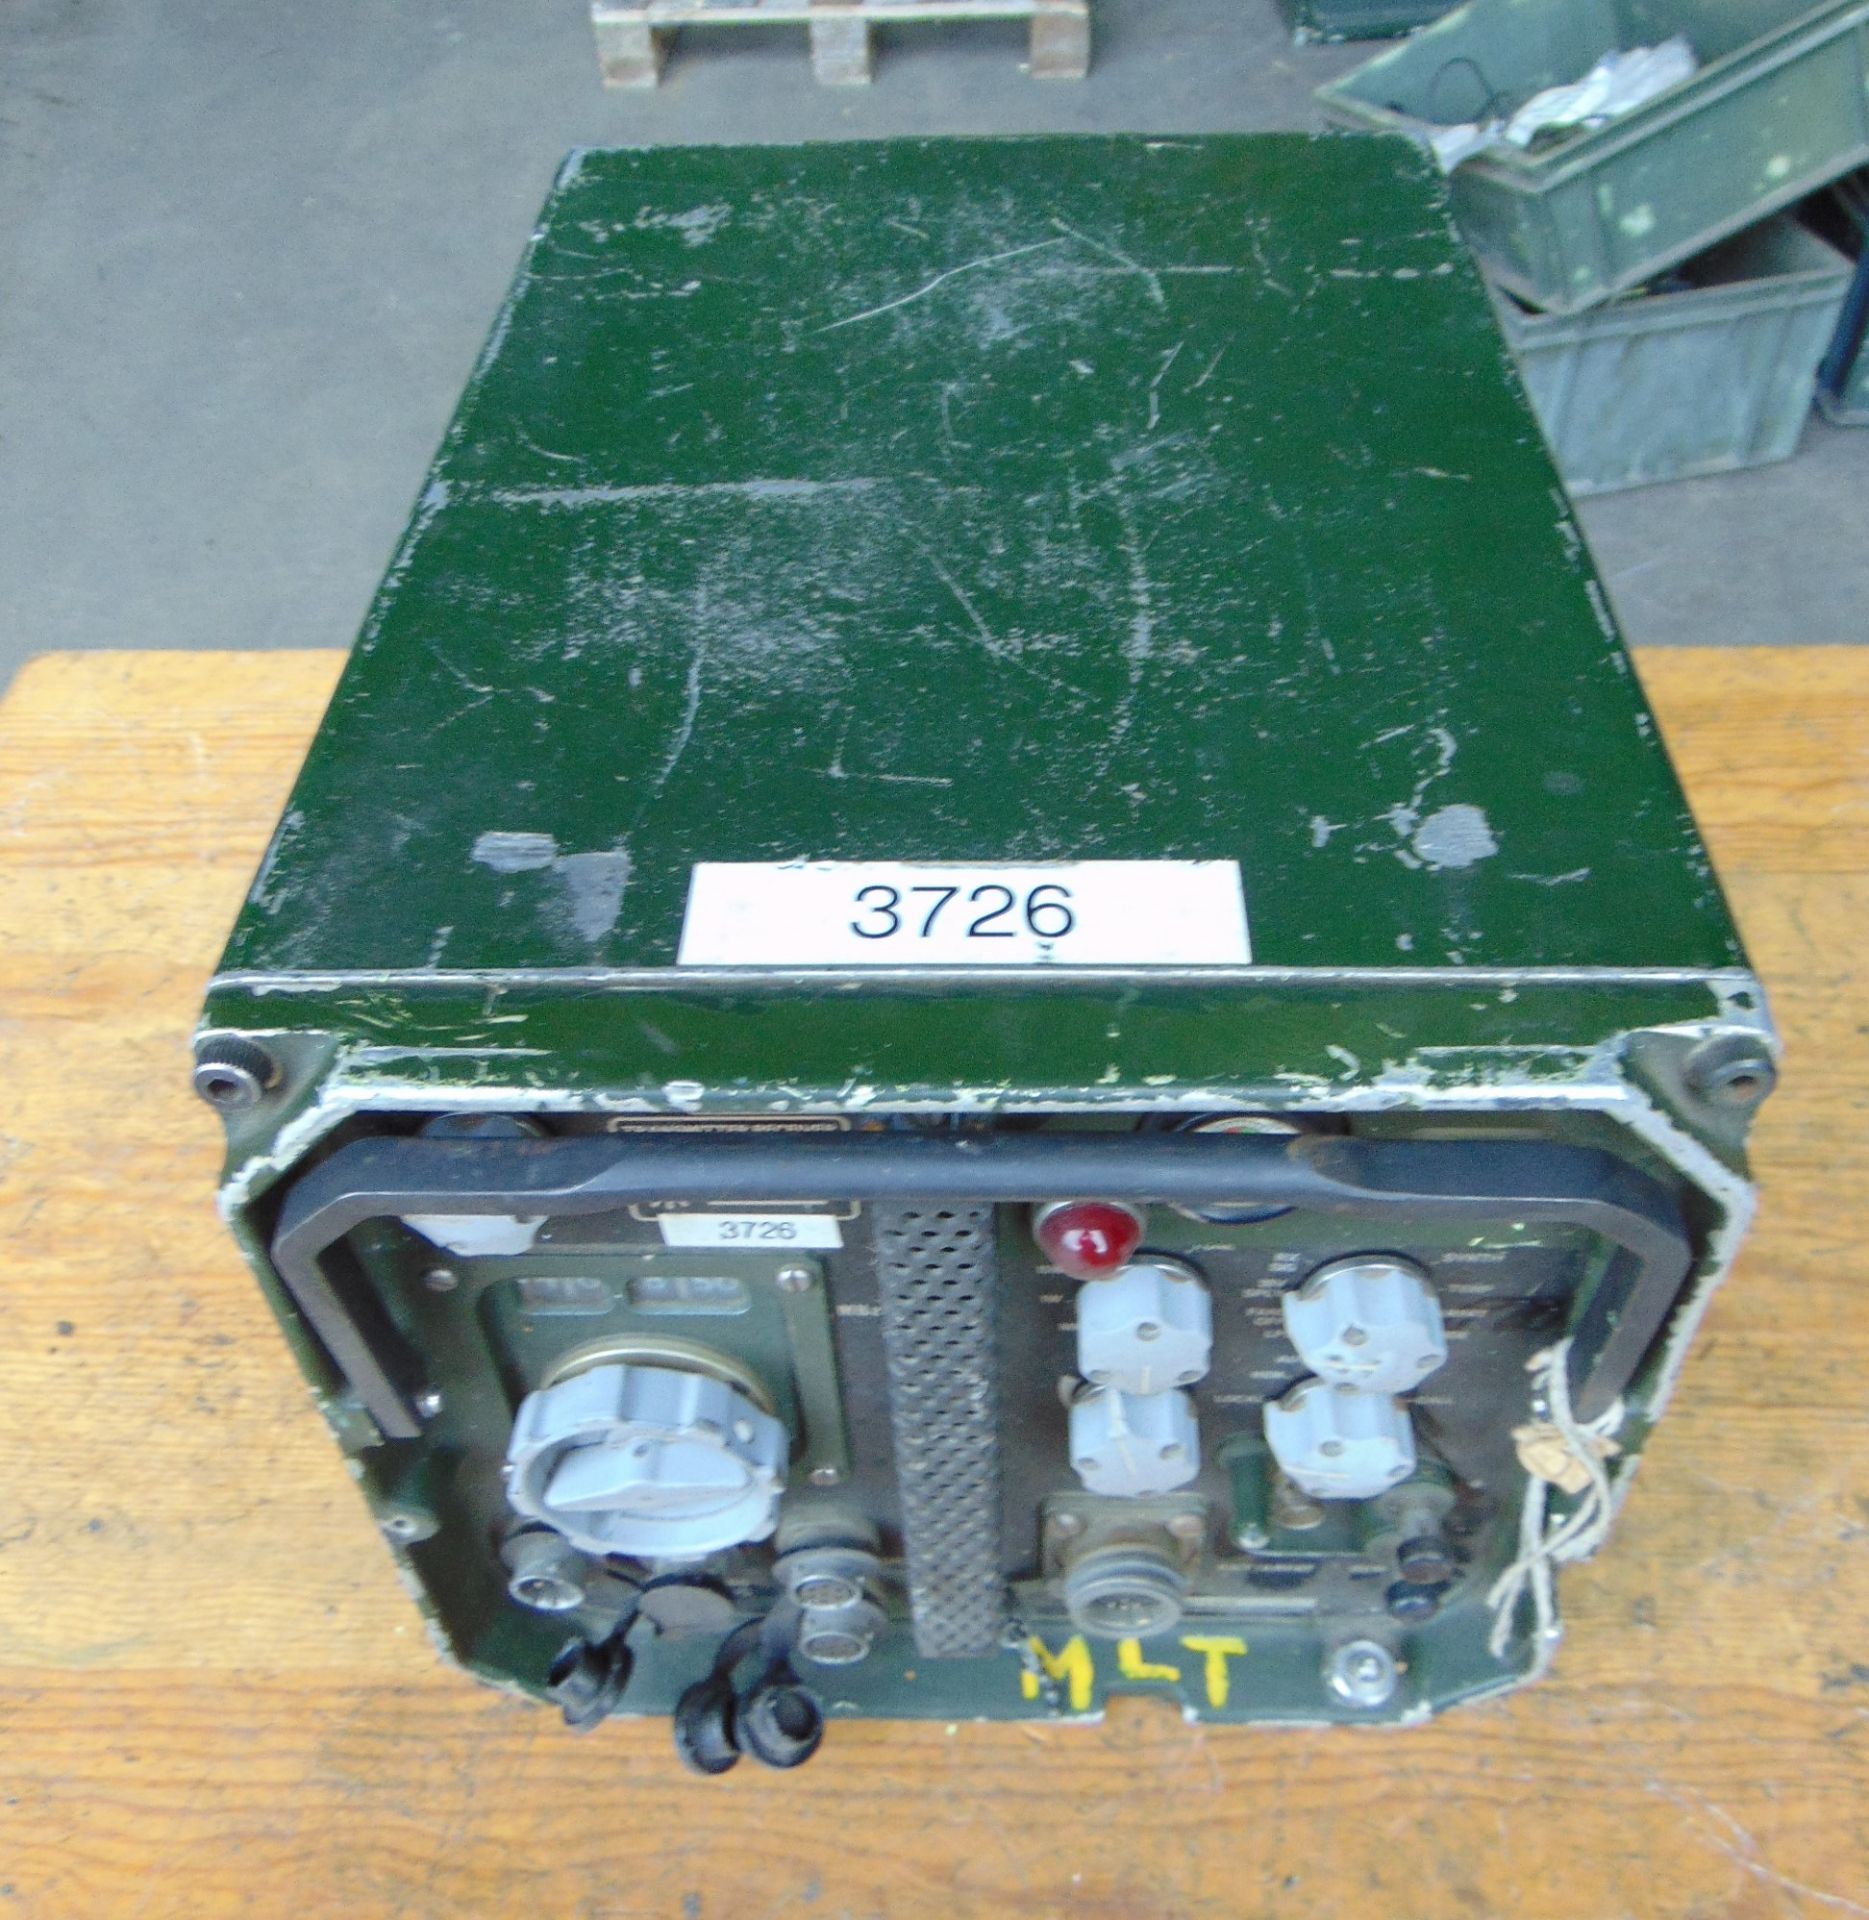 Clansman UK RT 353 VHF Transmitter Receiver Radio - Image 2 of 4